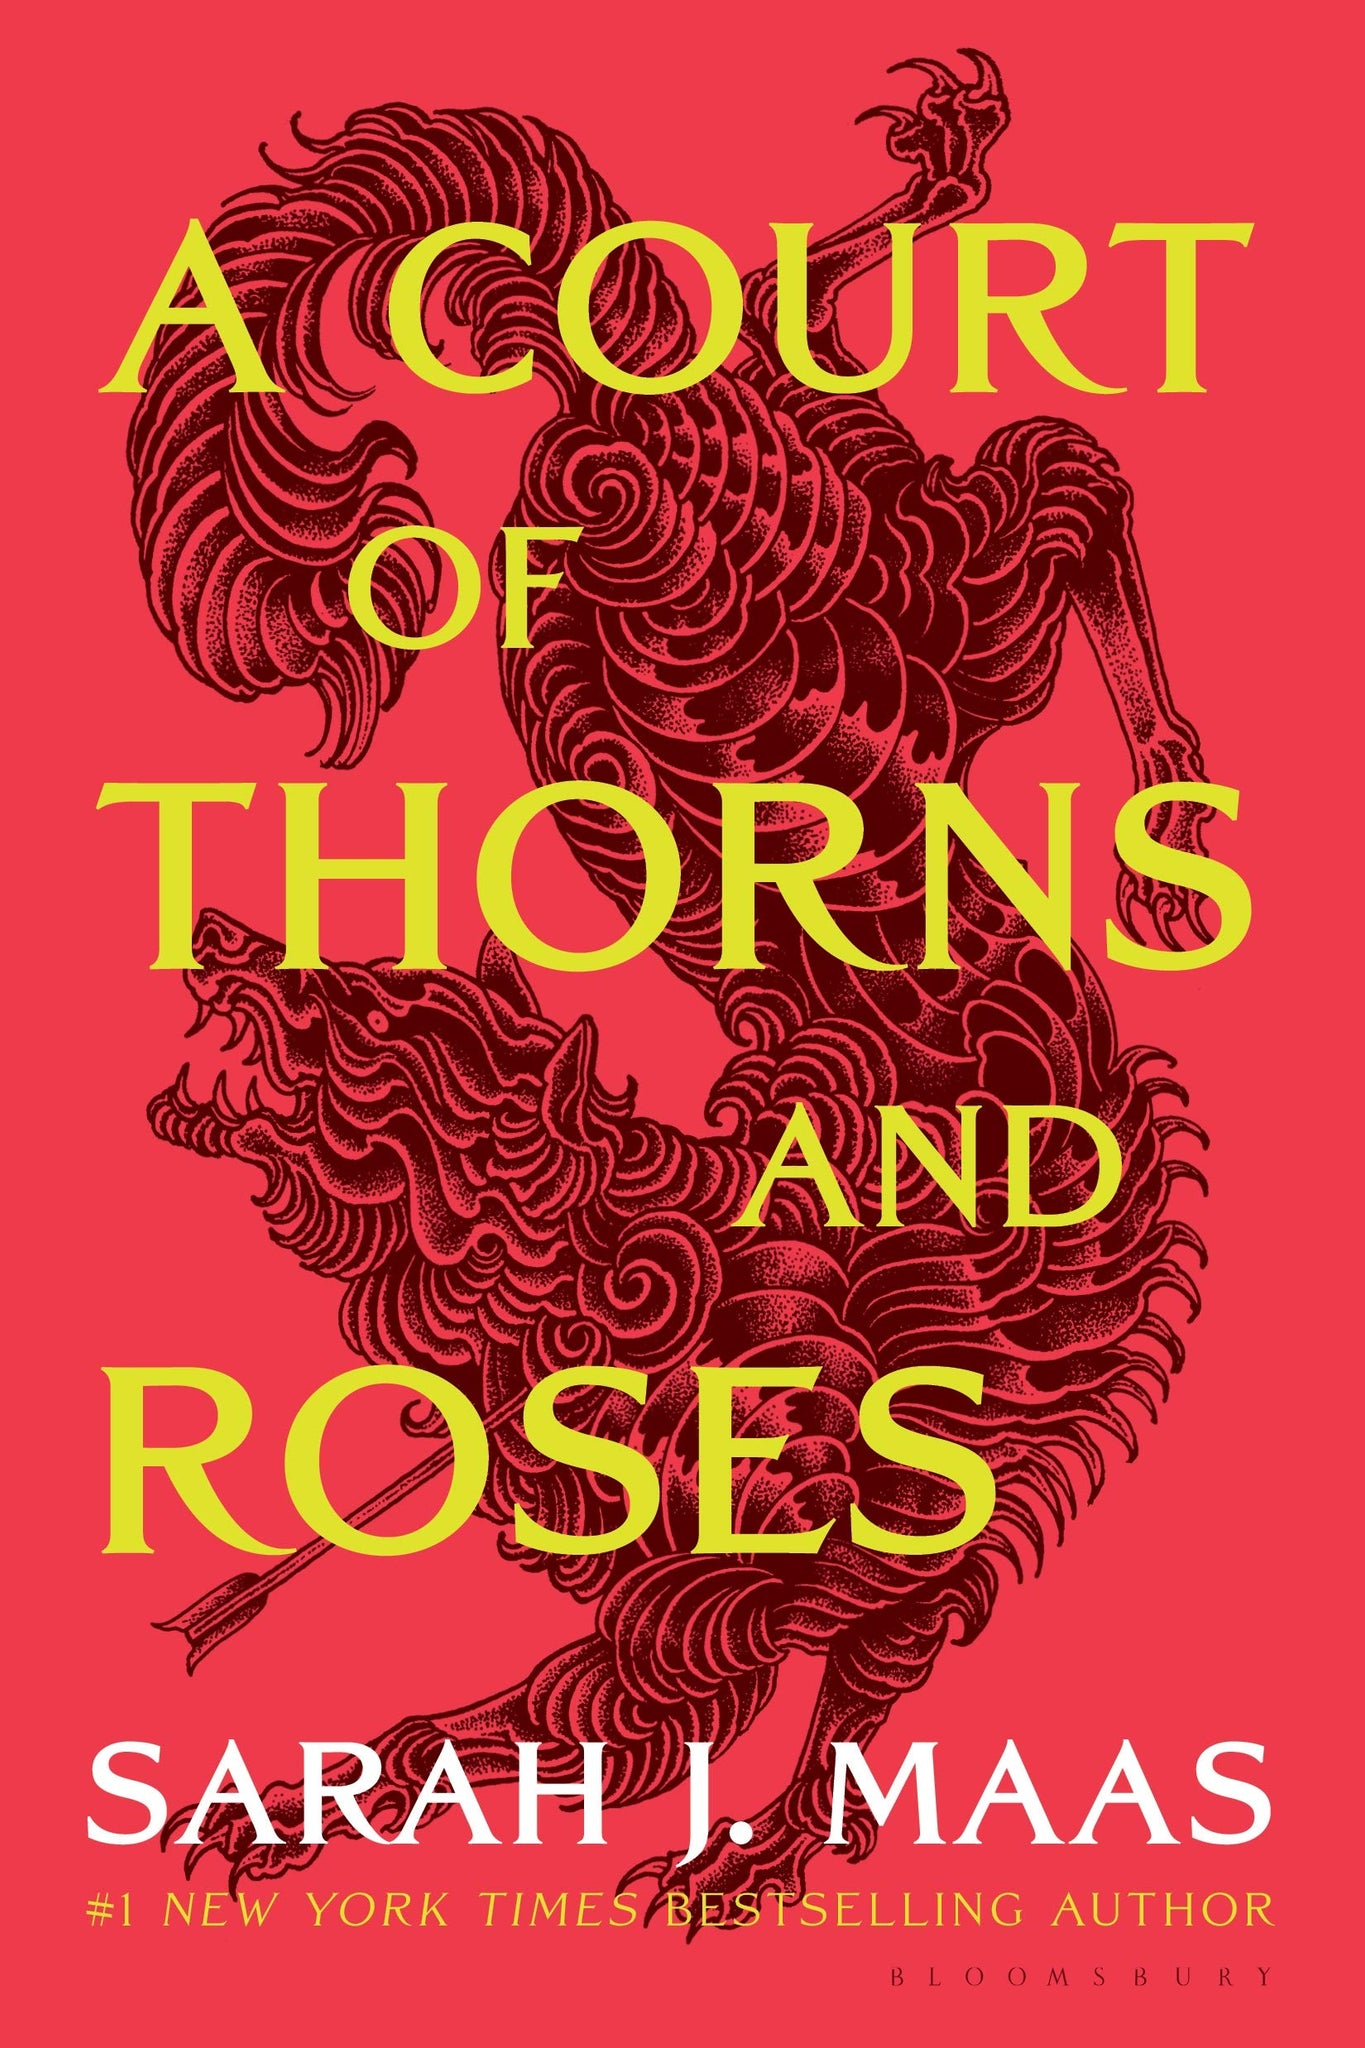 Court of Thorns & Roses #1: A Court of Thorns & Roses by Sarah J. Maas